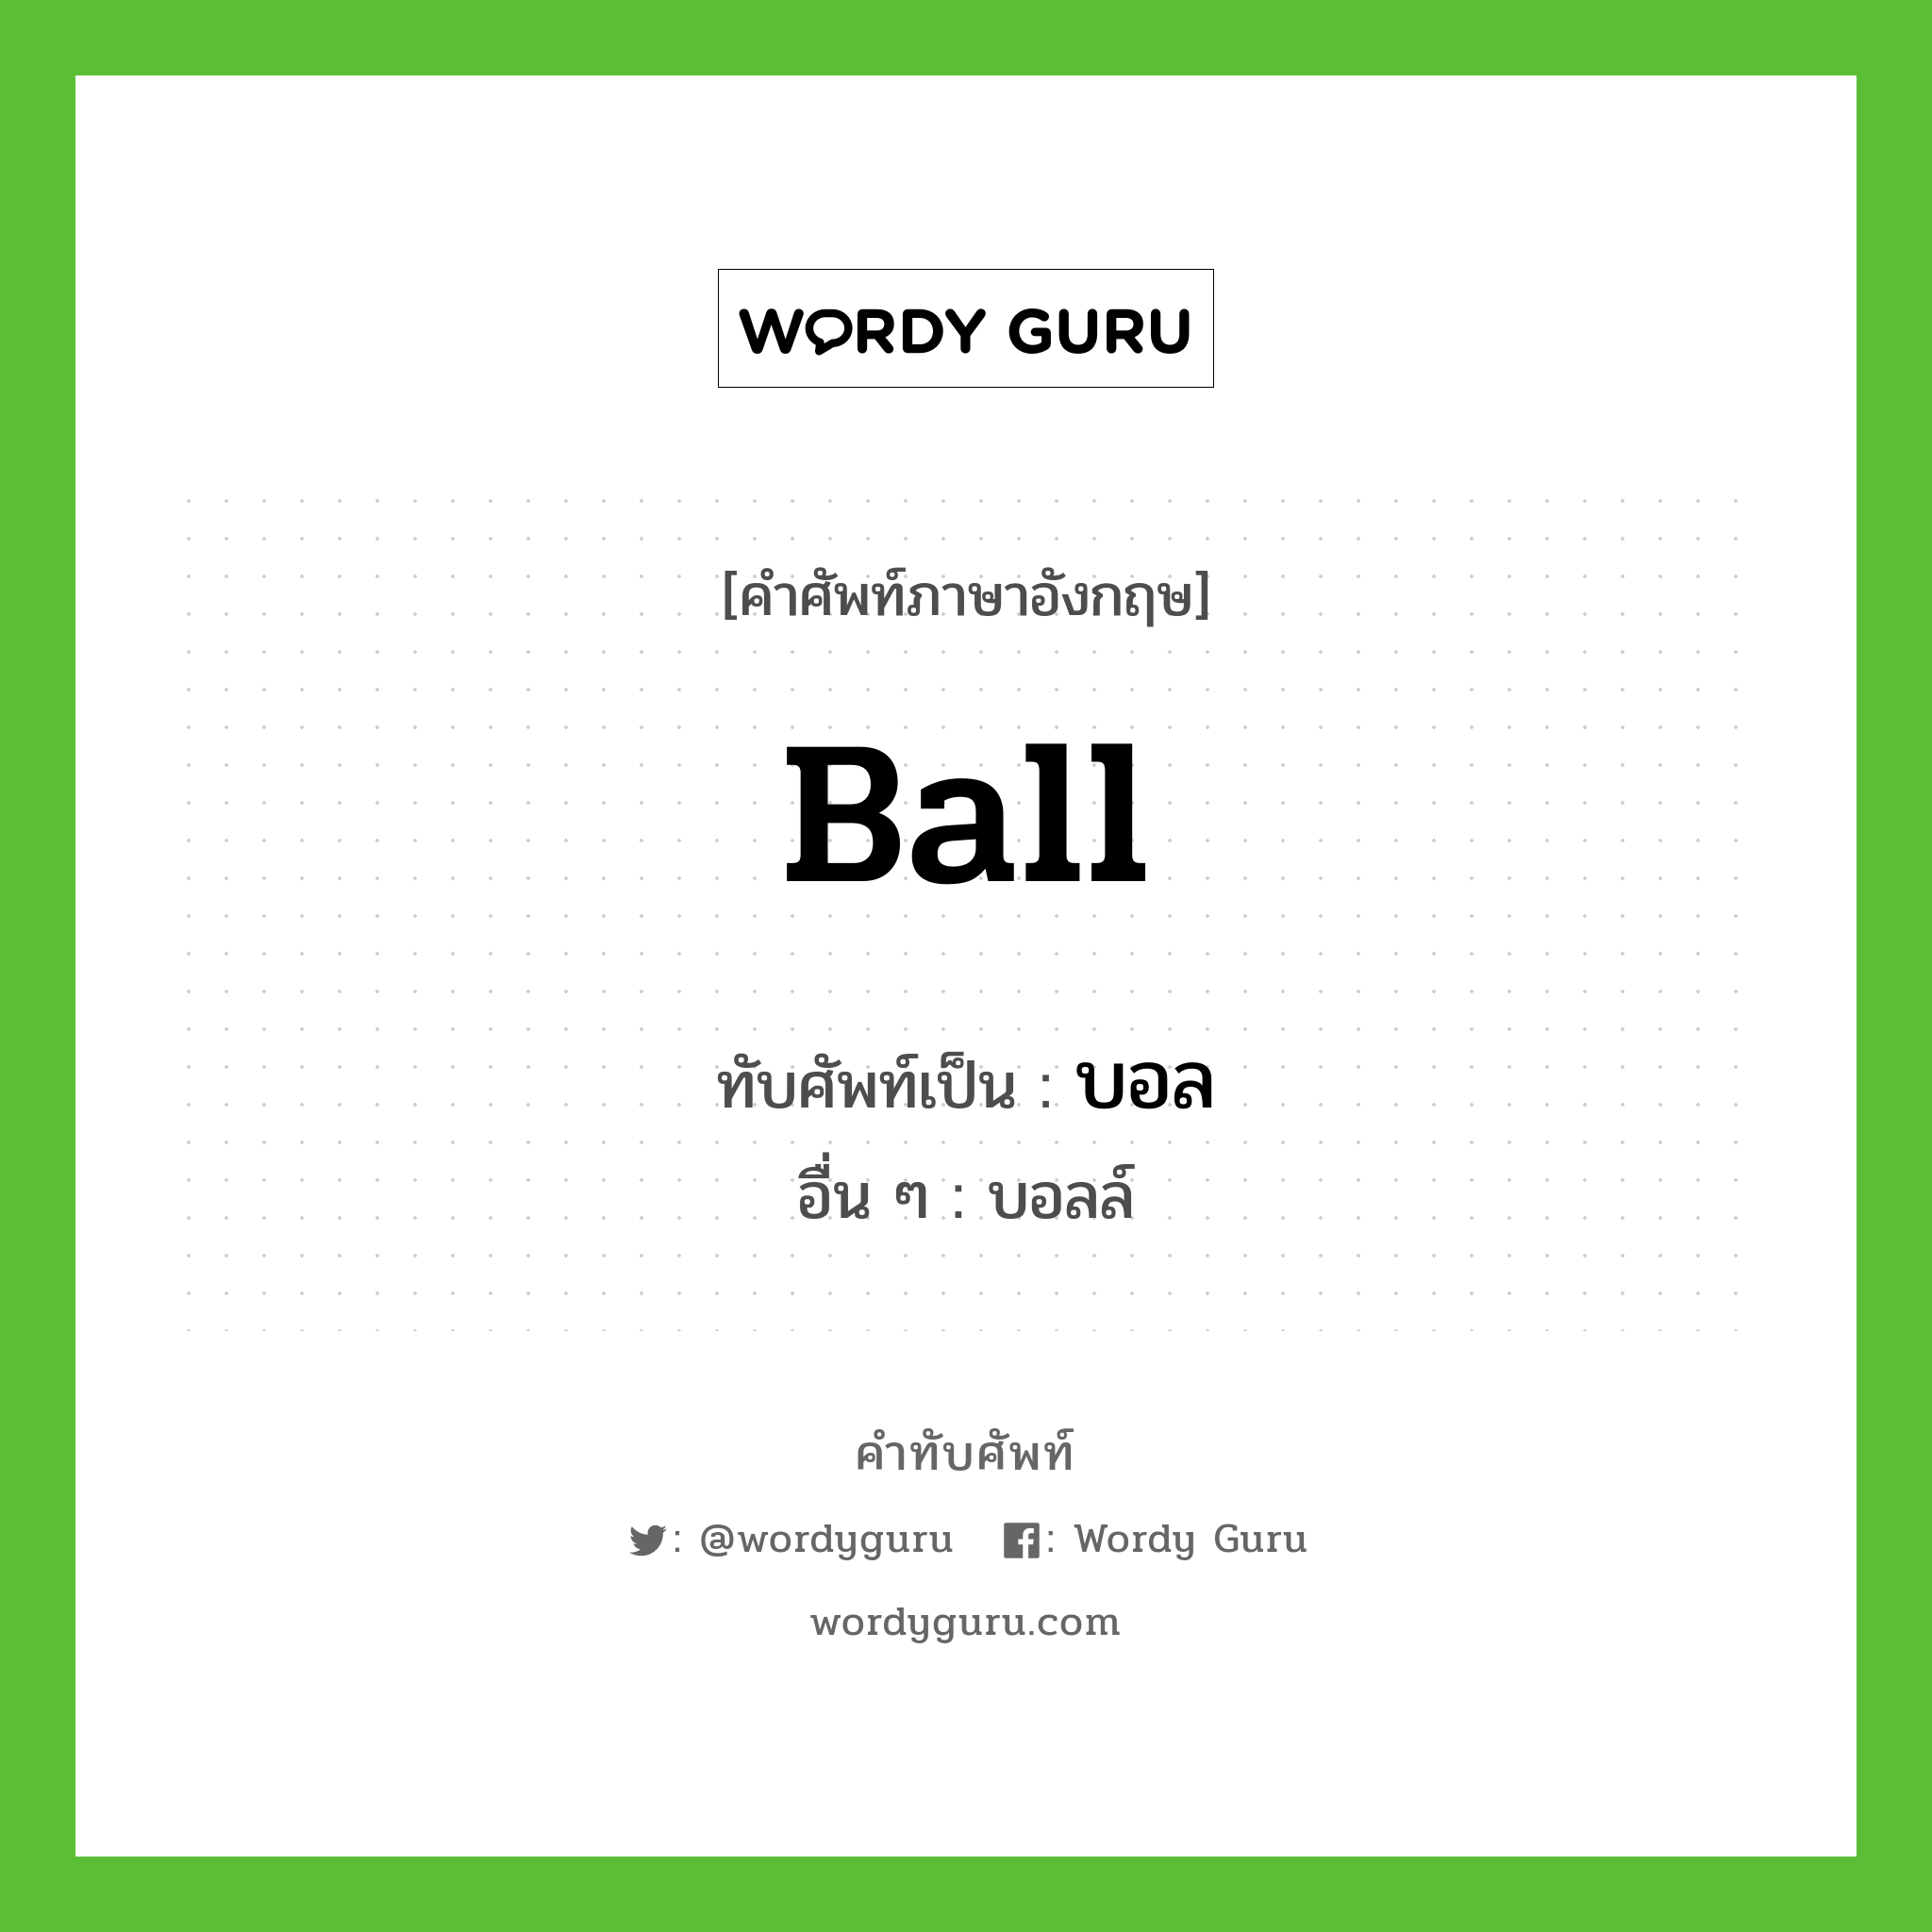 ball เขียนเป็นคำไทยว่าอะไร?, คำศัพท์ภาษาอังกฤษ ball ทับศัพท์เป็น บอล อื่น ๆ บอลล์